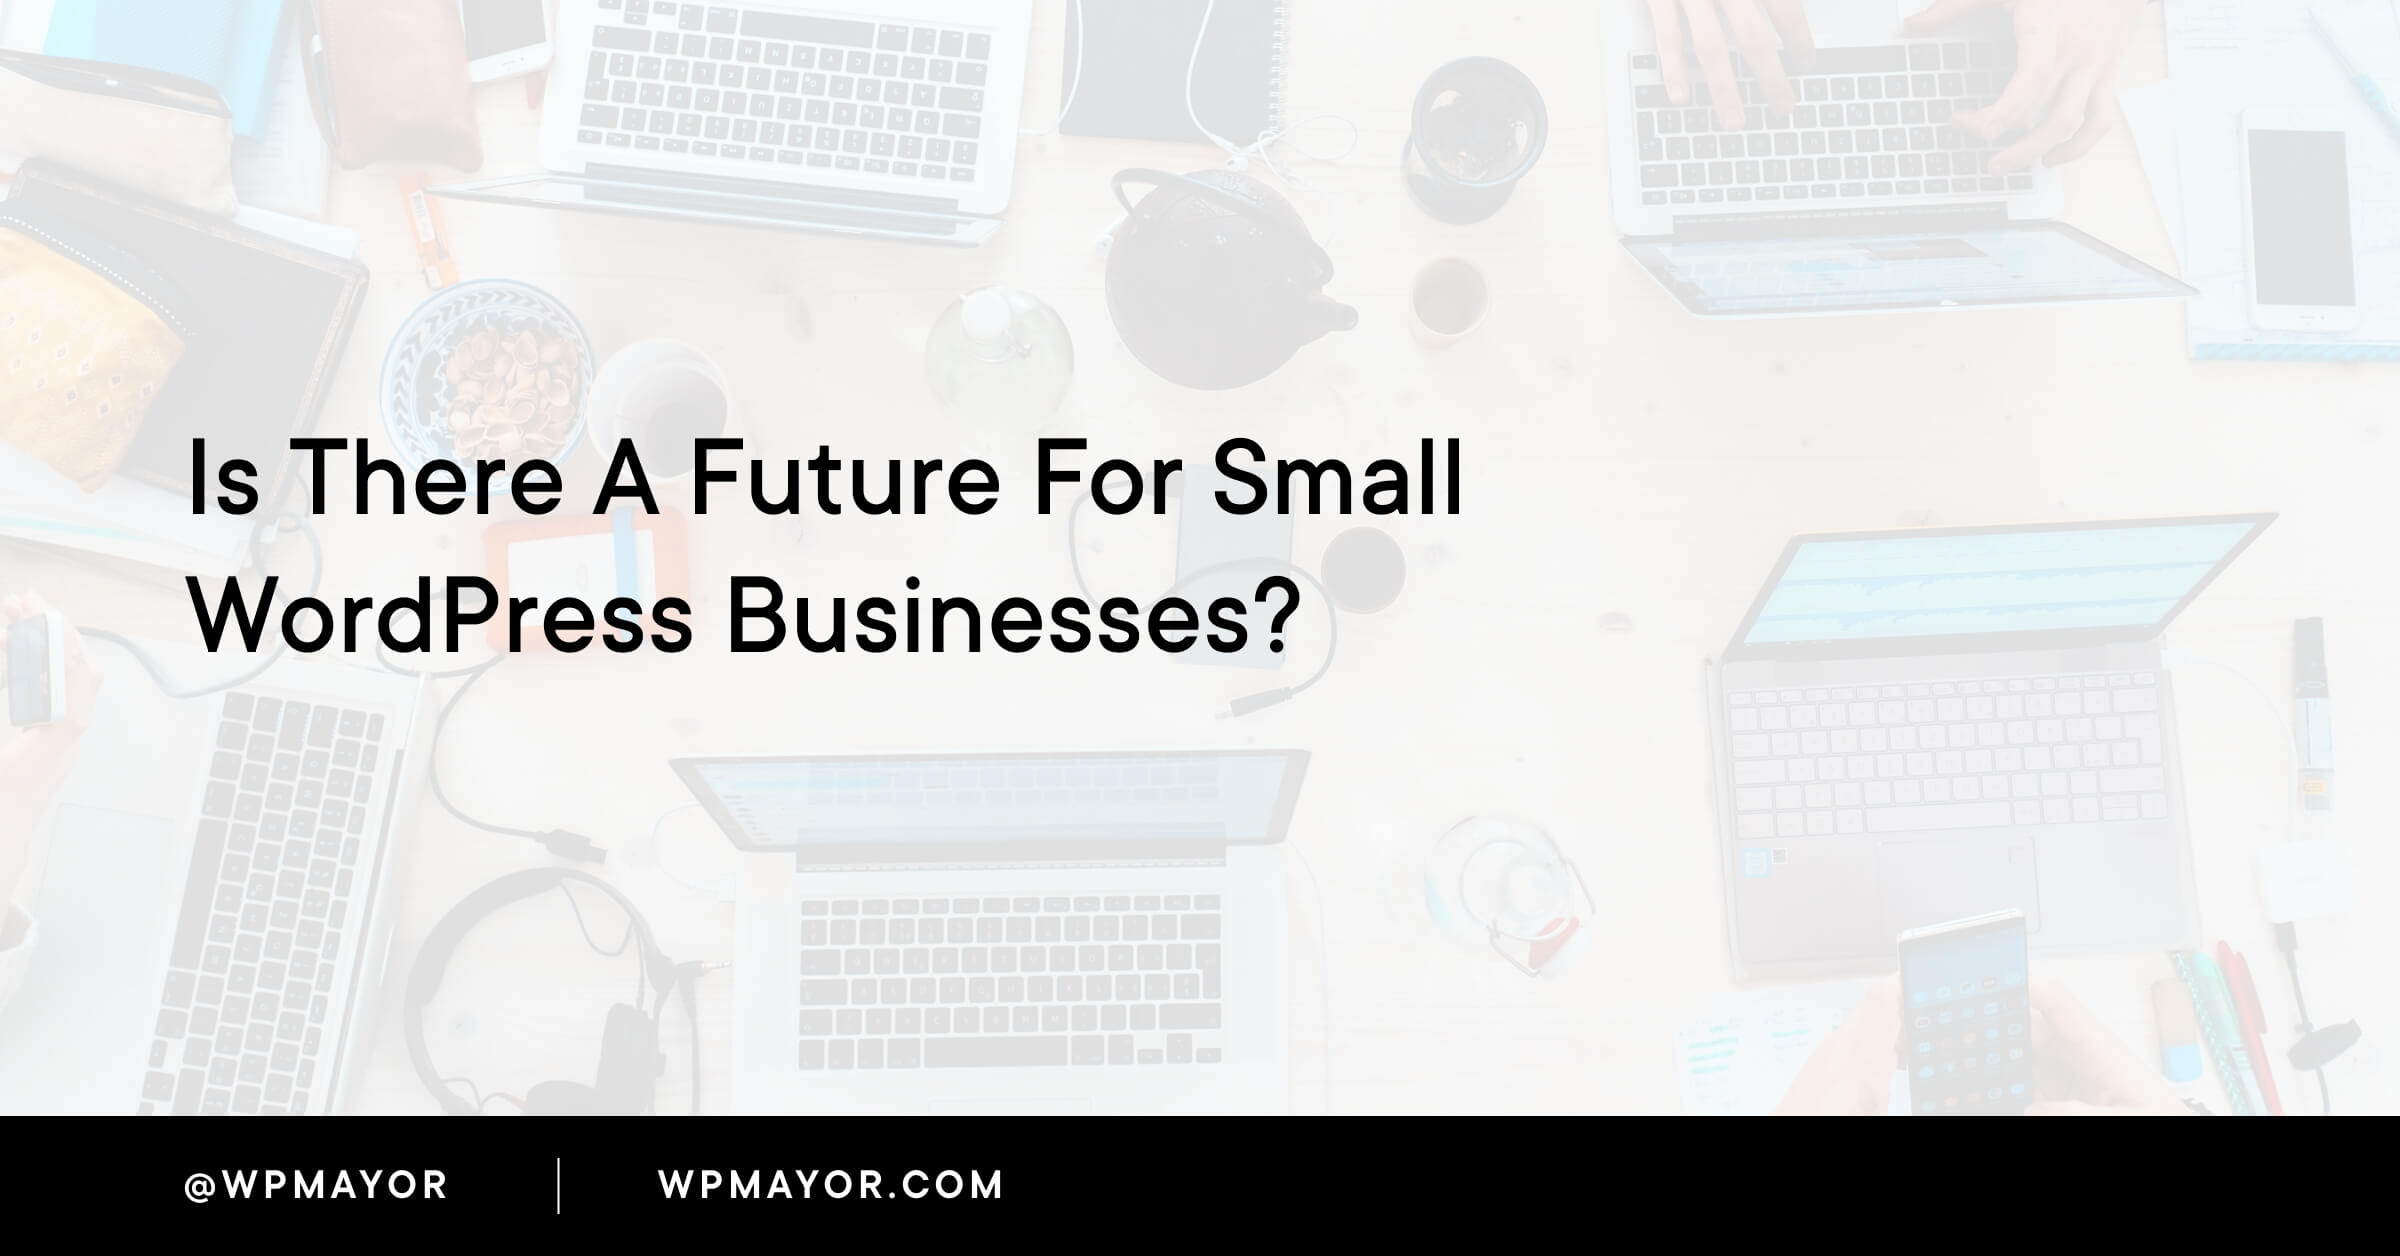 C'è un futuro per le piccole aziende WordPress?